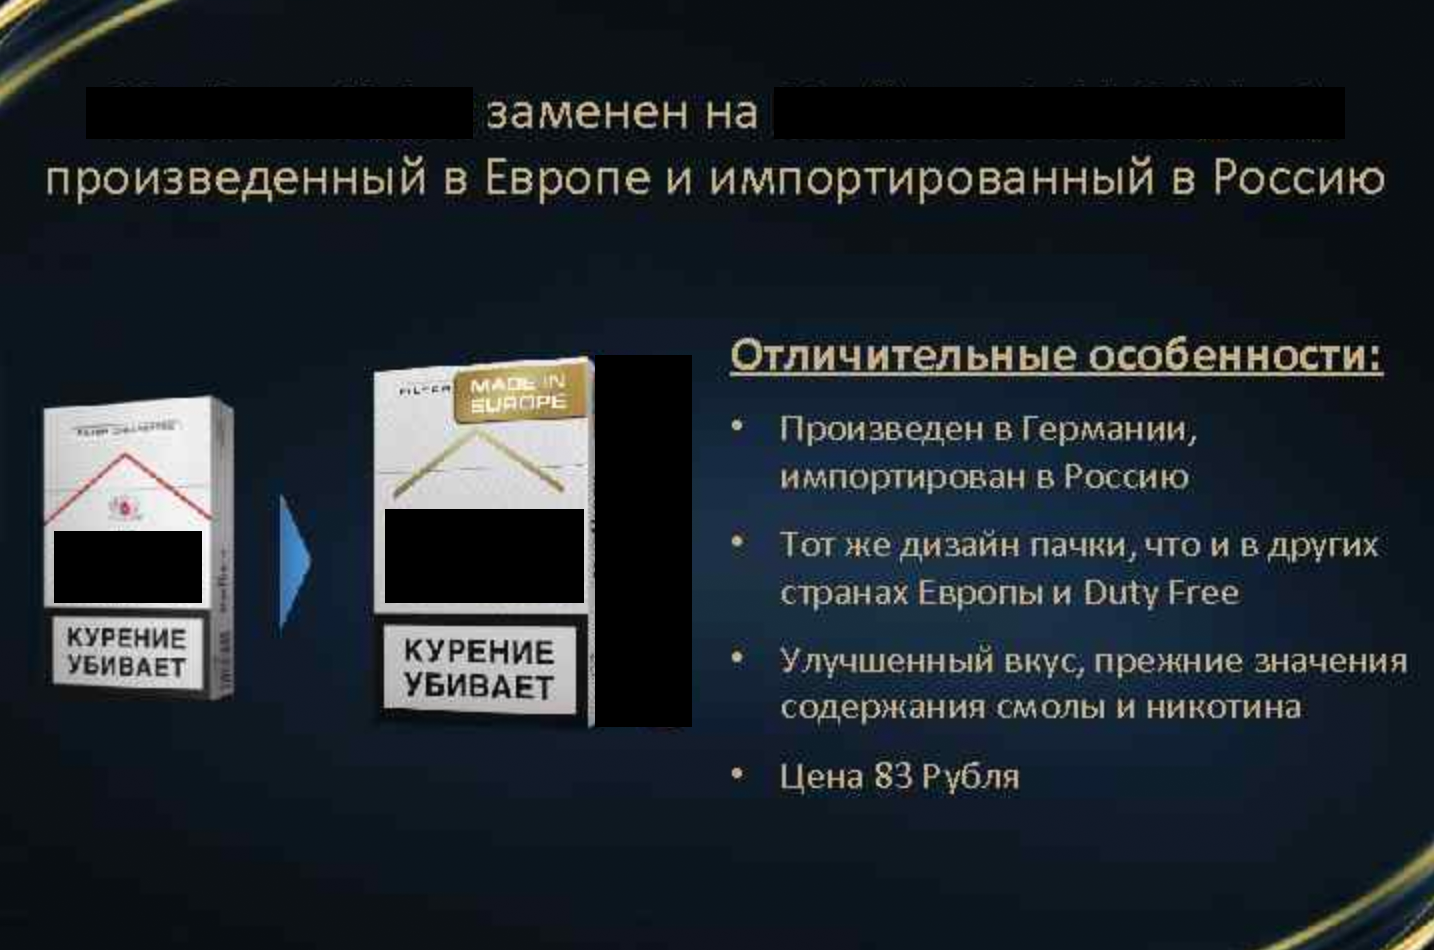 За эту рекламу магазин заплатил штраф 150 тысяч рублей. Фото: present5.com